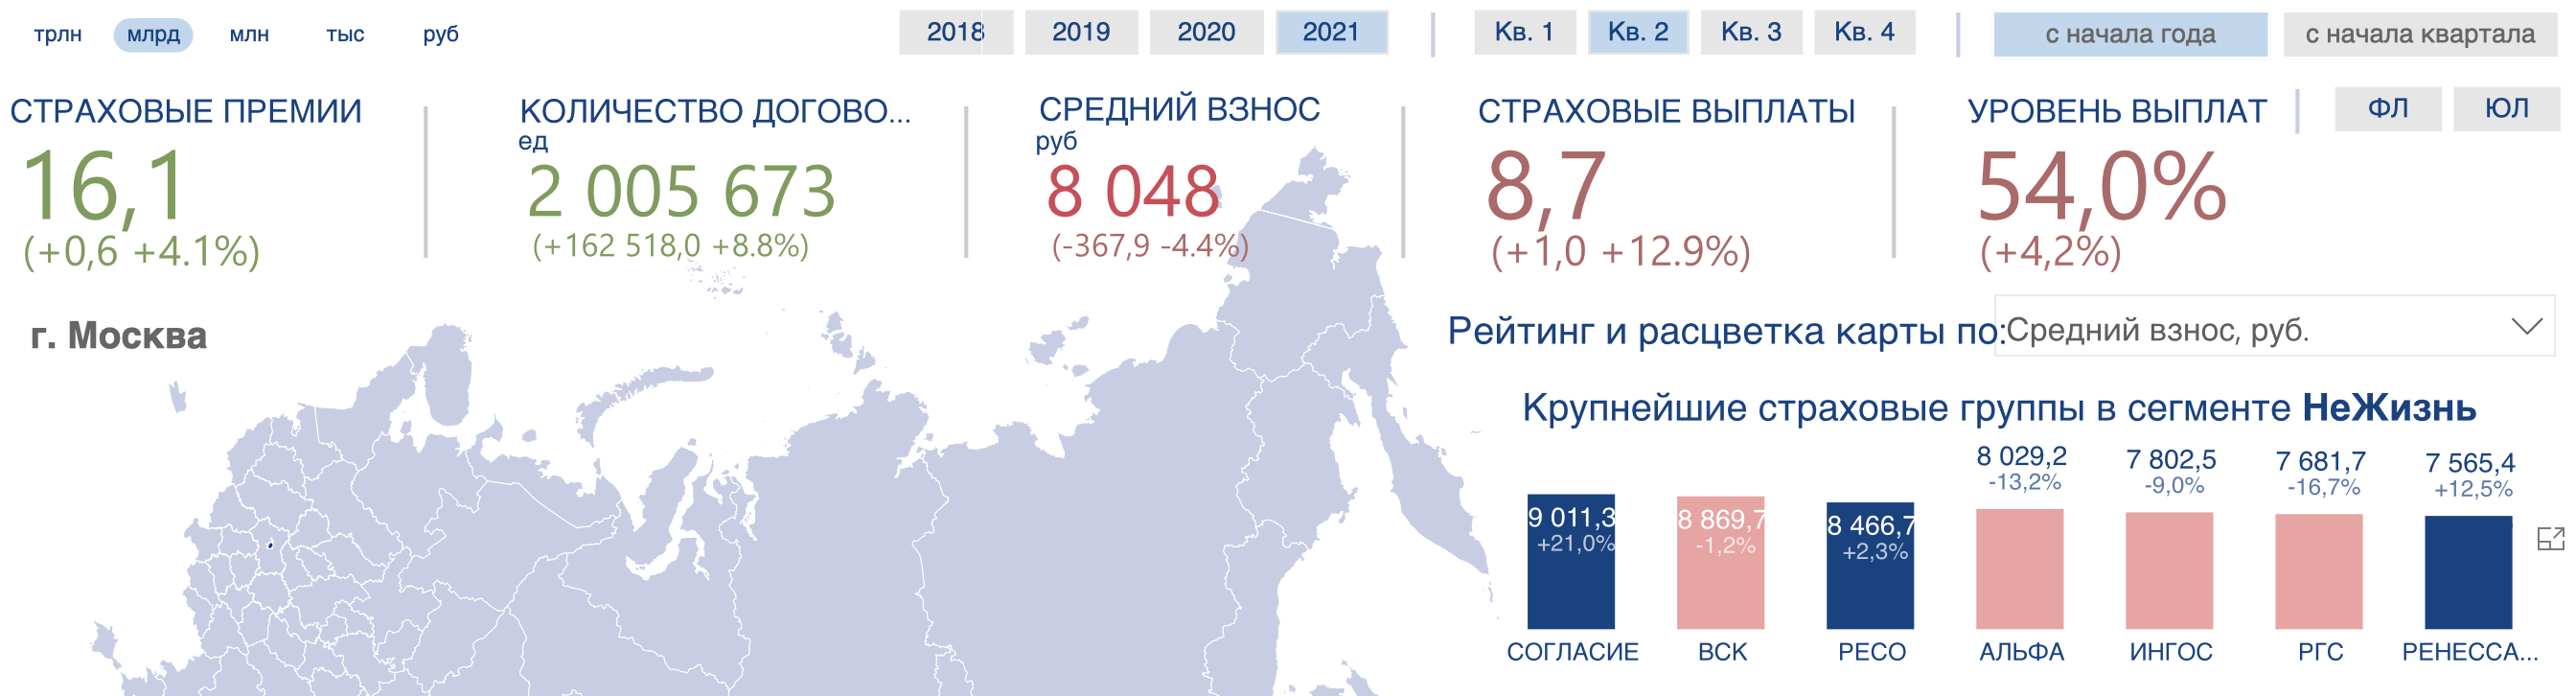 Средняя стоимость ОСАГО в Москве 1 полугодие 2021 года